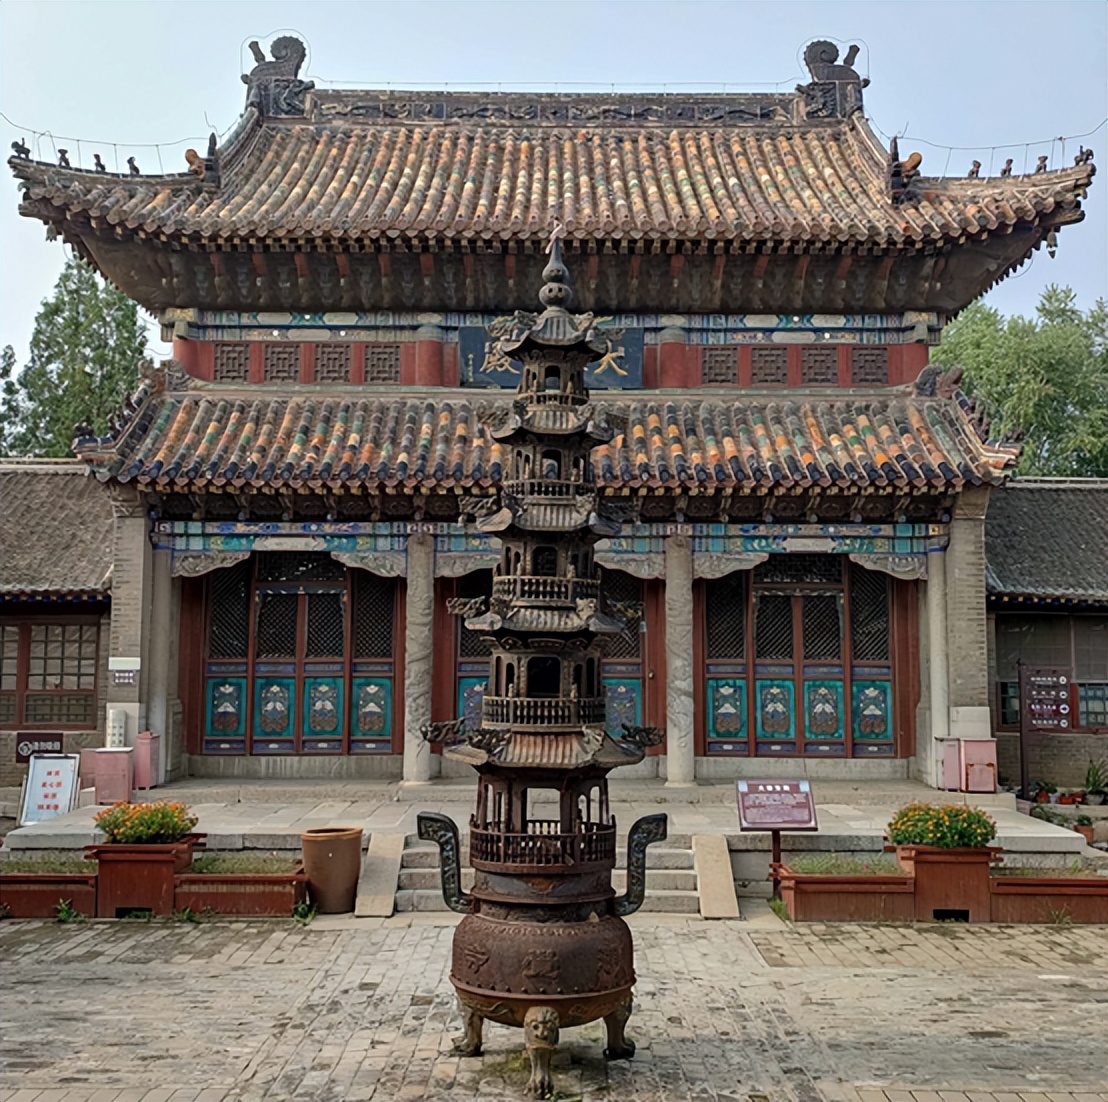 玉田净觉寺∣这样的寺院,北京周边看不到第二座